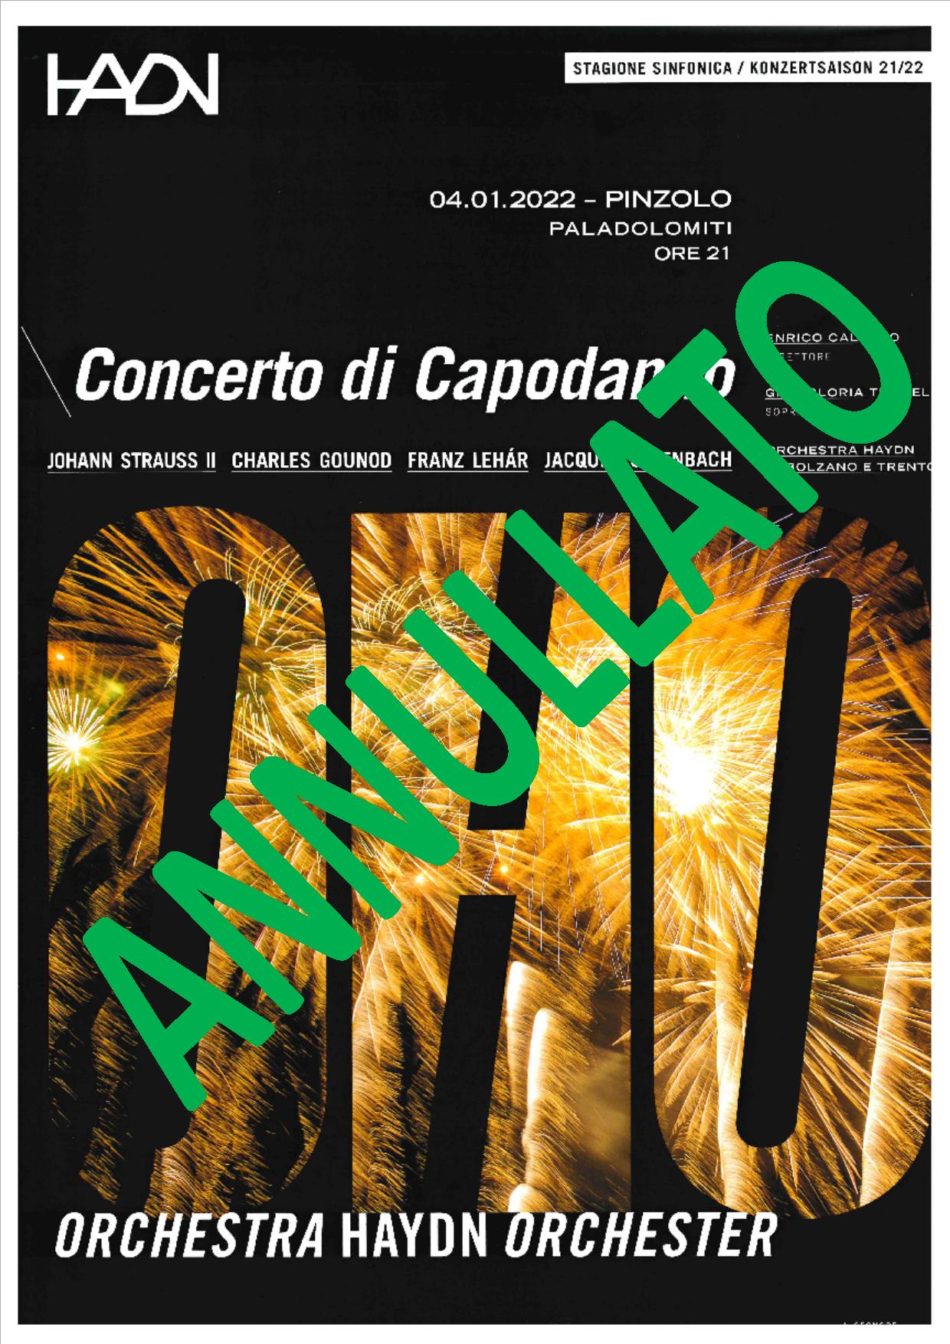 Causa Covid è stato annullato il Concerto di Capodanno dell’Orchestra Haydn previsto il 4 gennaio a Pinzolo